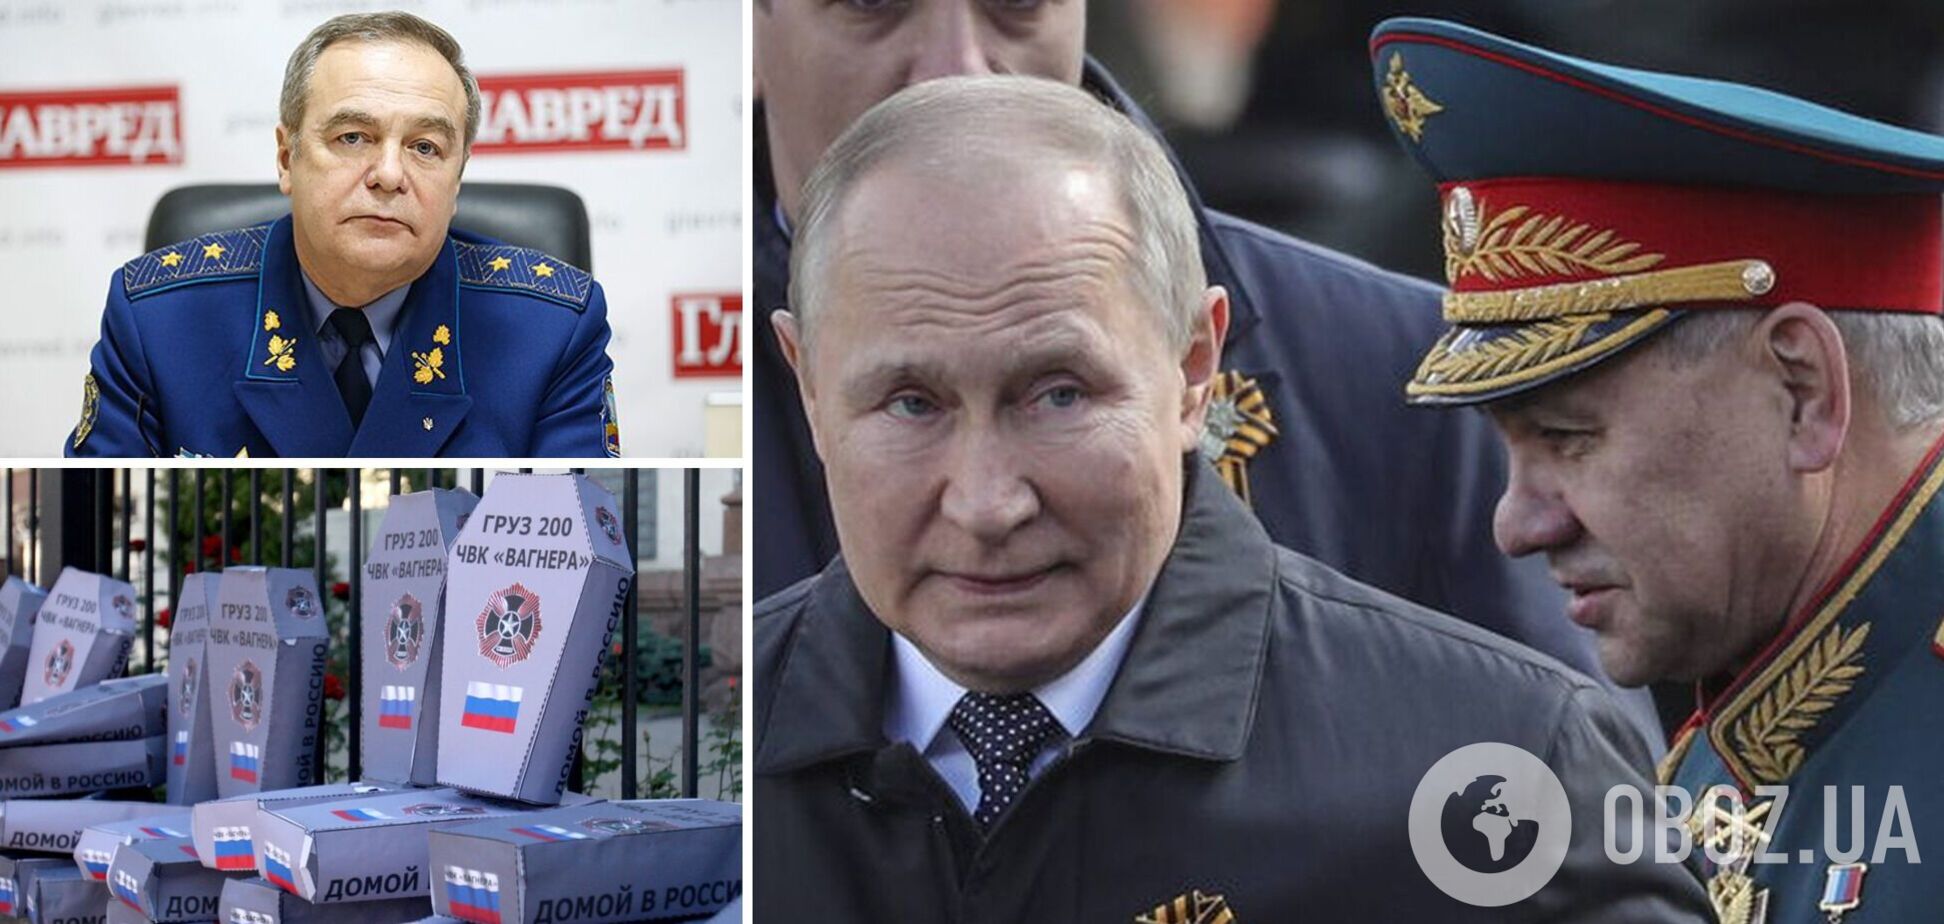 Генерал Романенко: Путину придется сдавать позиции, его снесут вместе с троном. Интервью